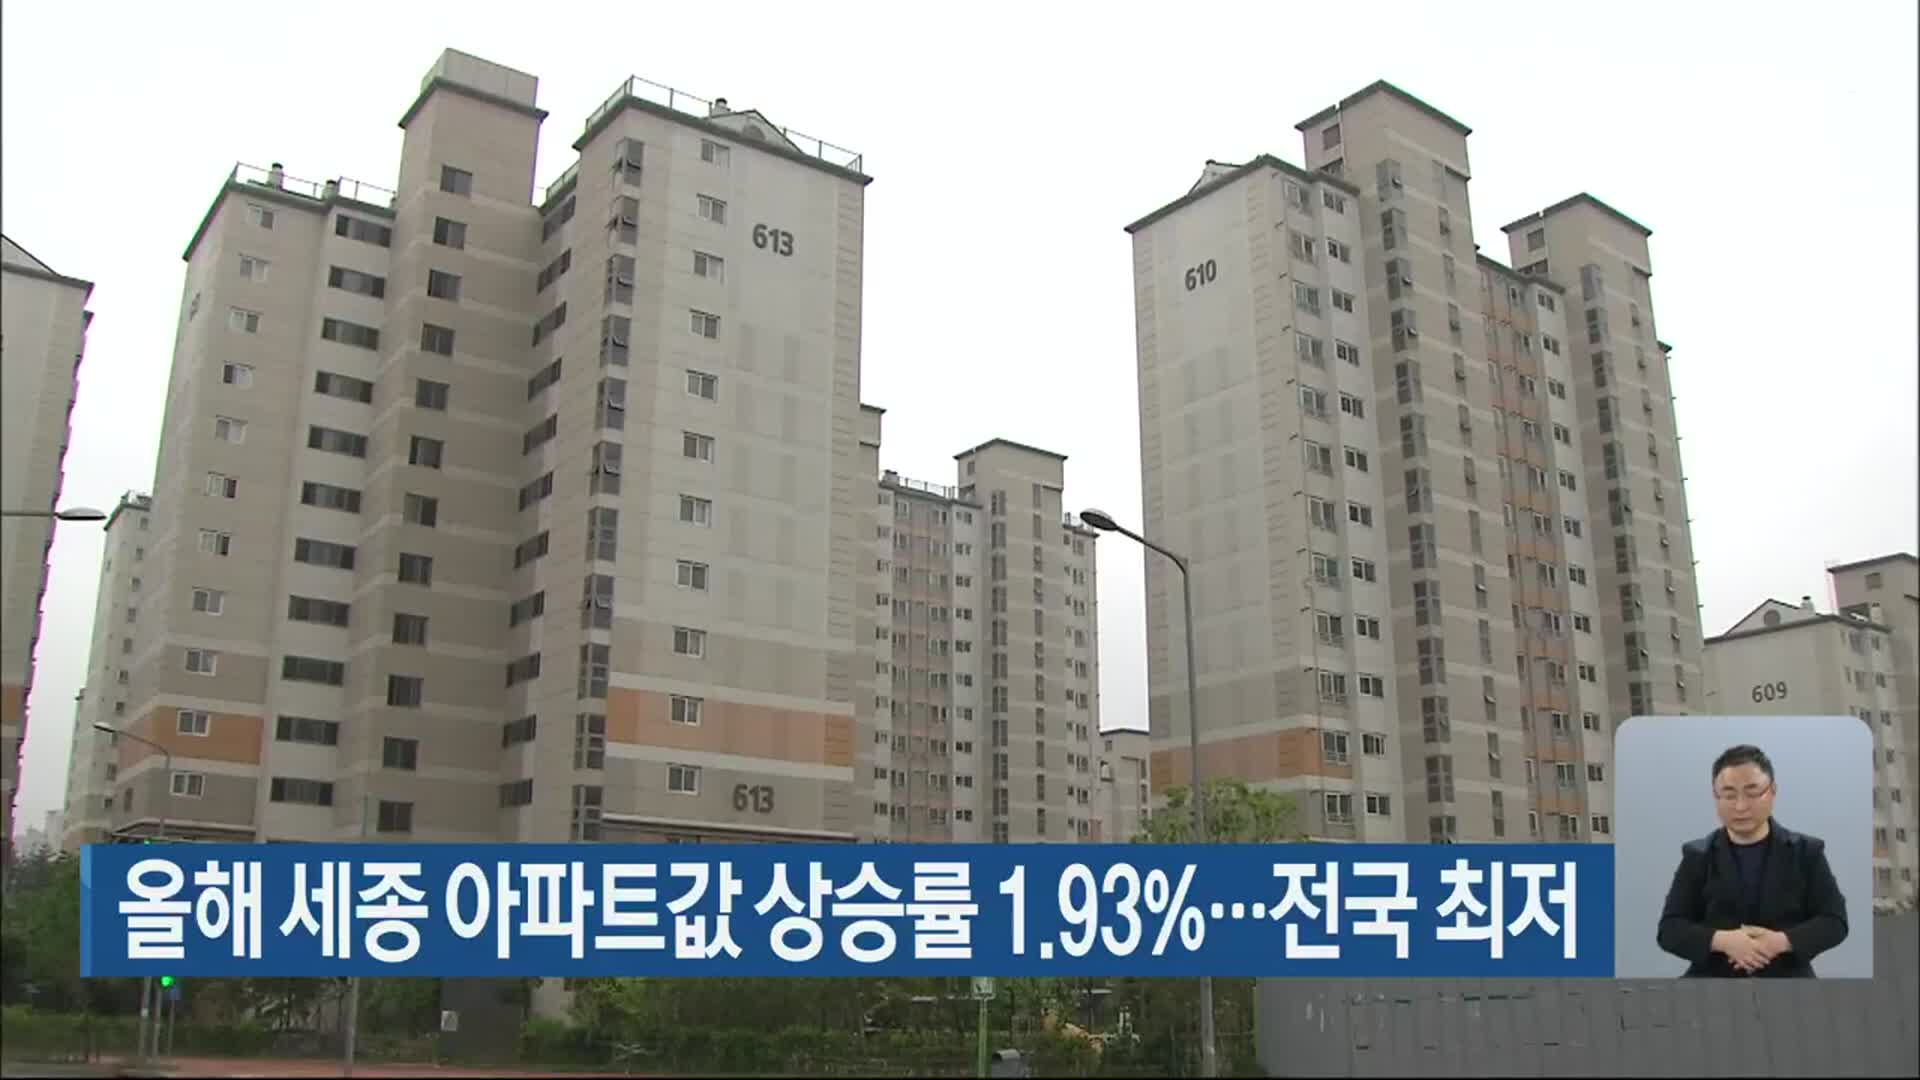 올해 세종 아파트값 상승률 1.93%…전국 최저